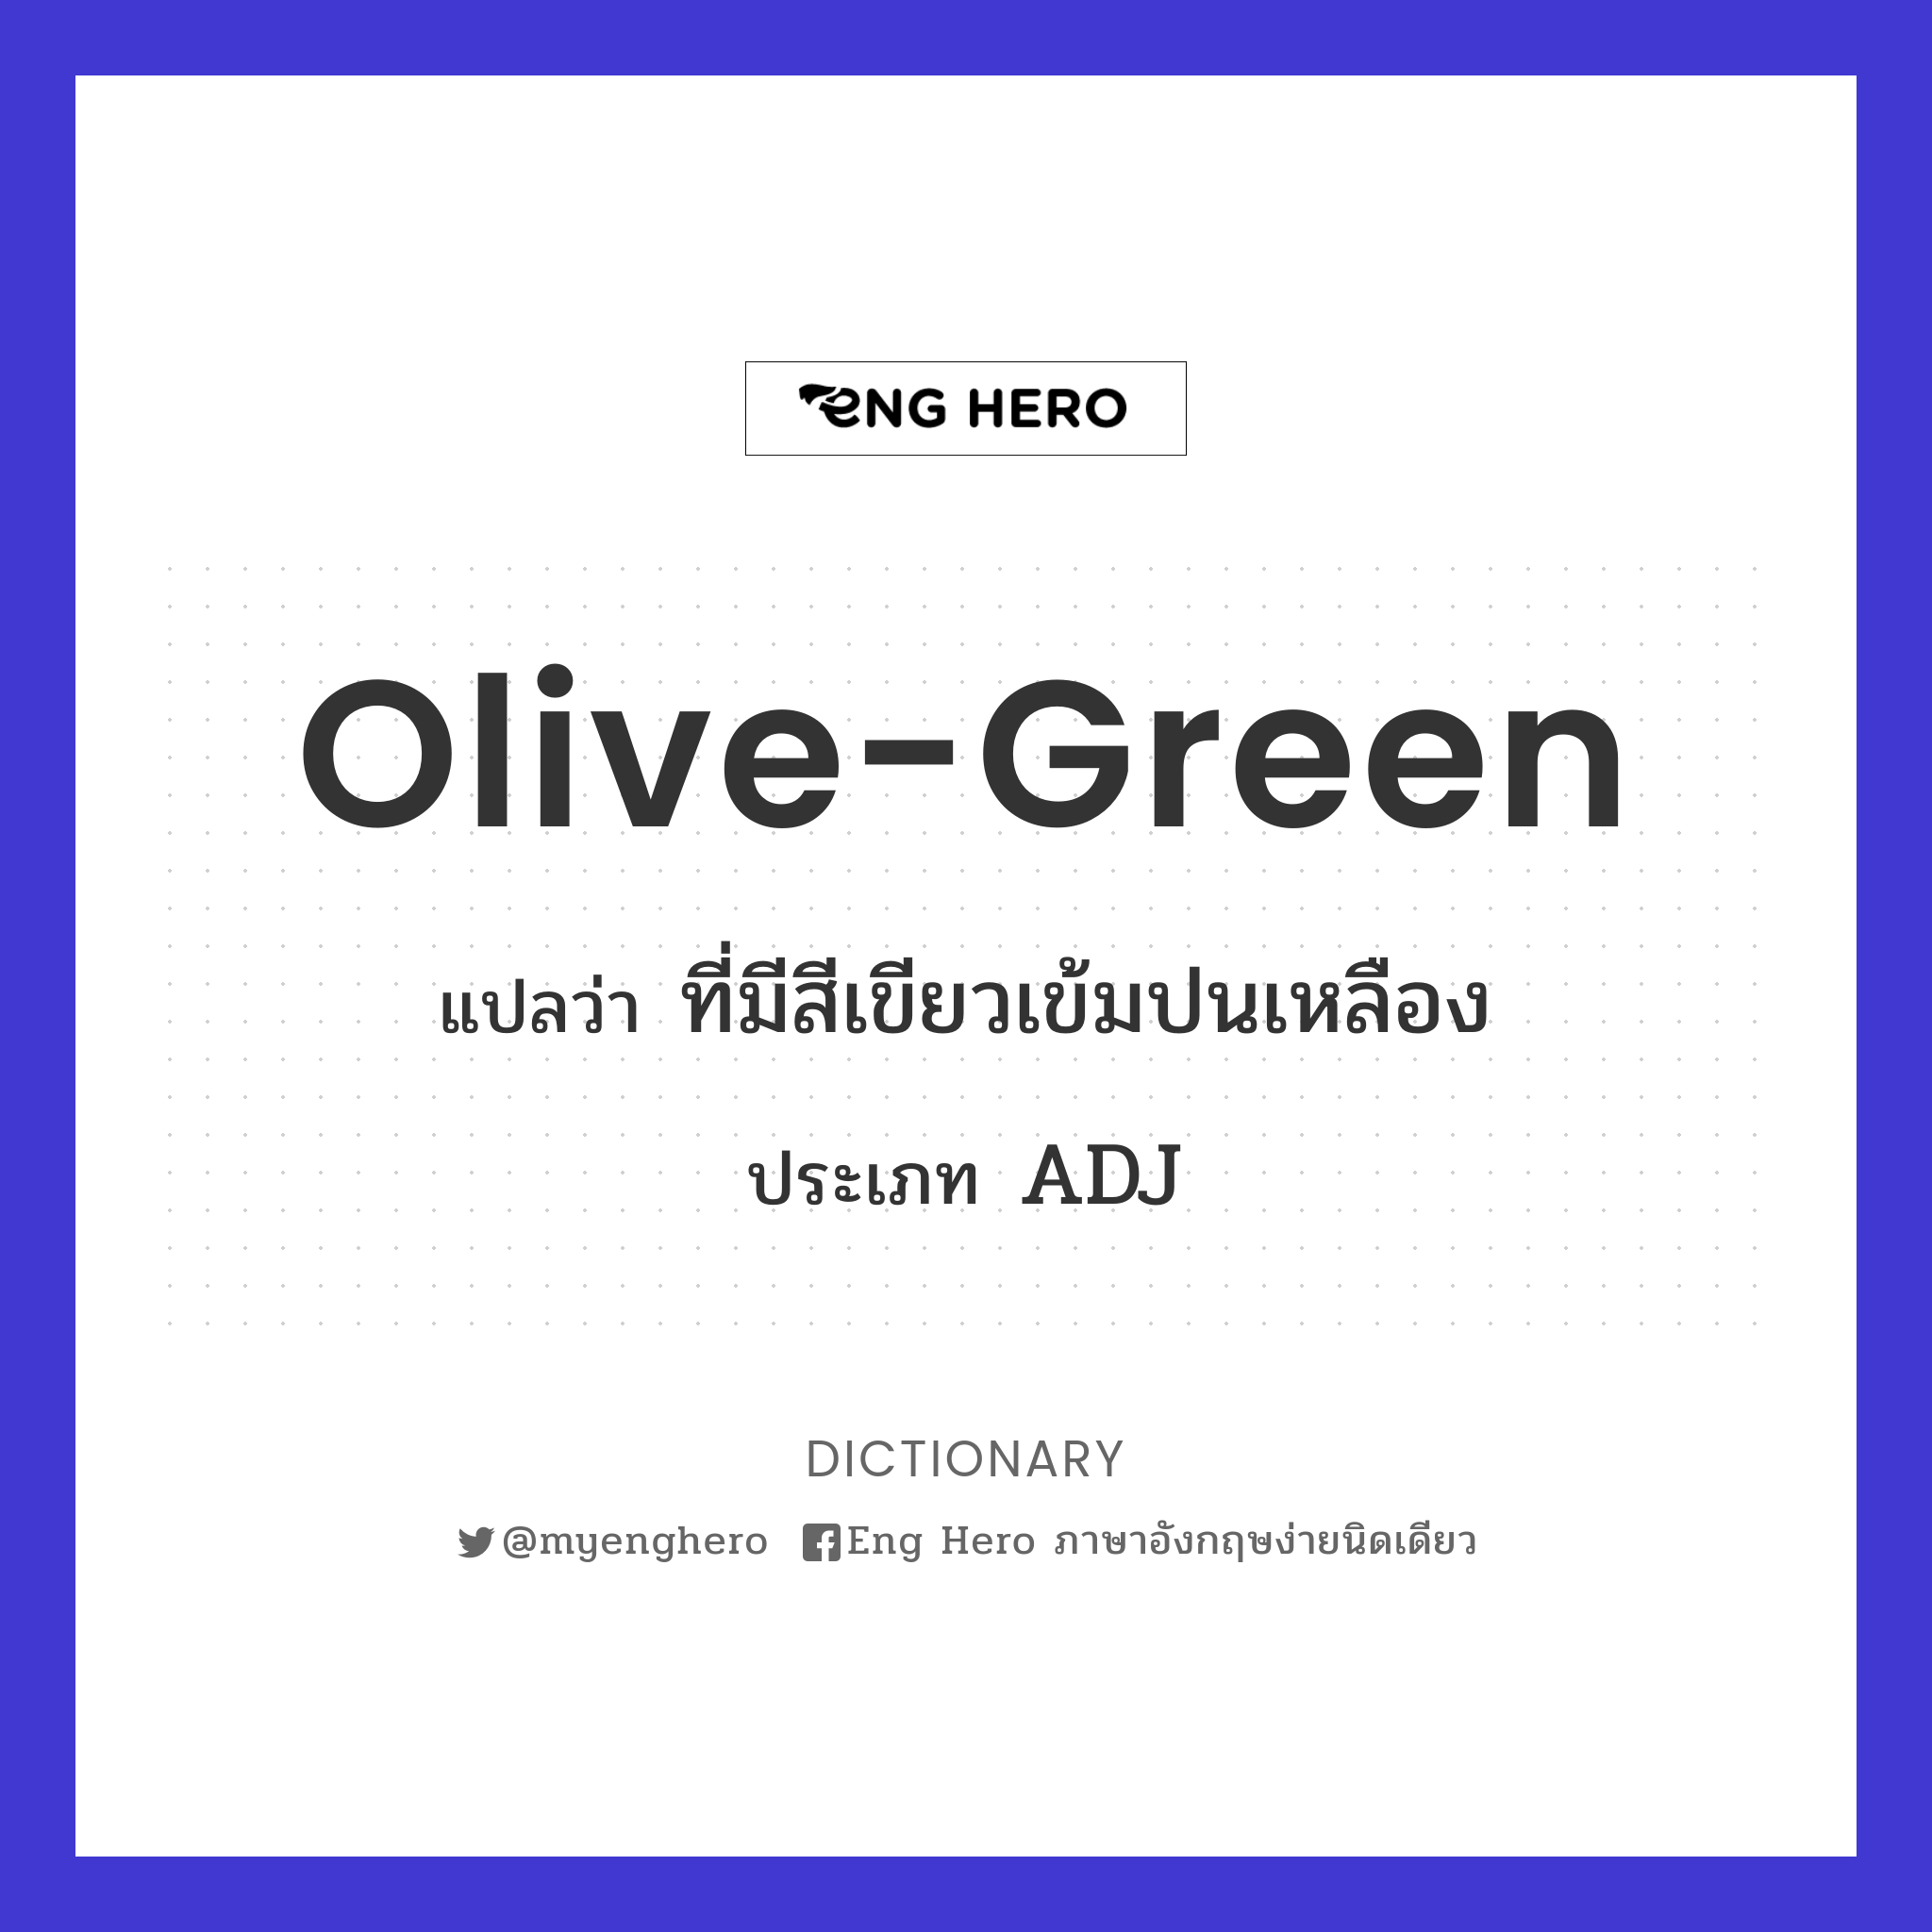 Olive-Green แปลว่า ที่มีสีเขียวเข้มปนเหลือง | Eng Hero เรียนภาษาอังกฤษ  ออนไลน์ ฟรี